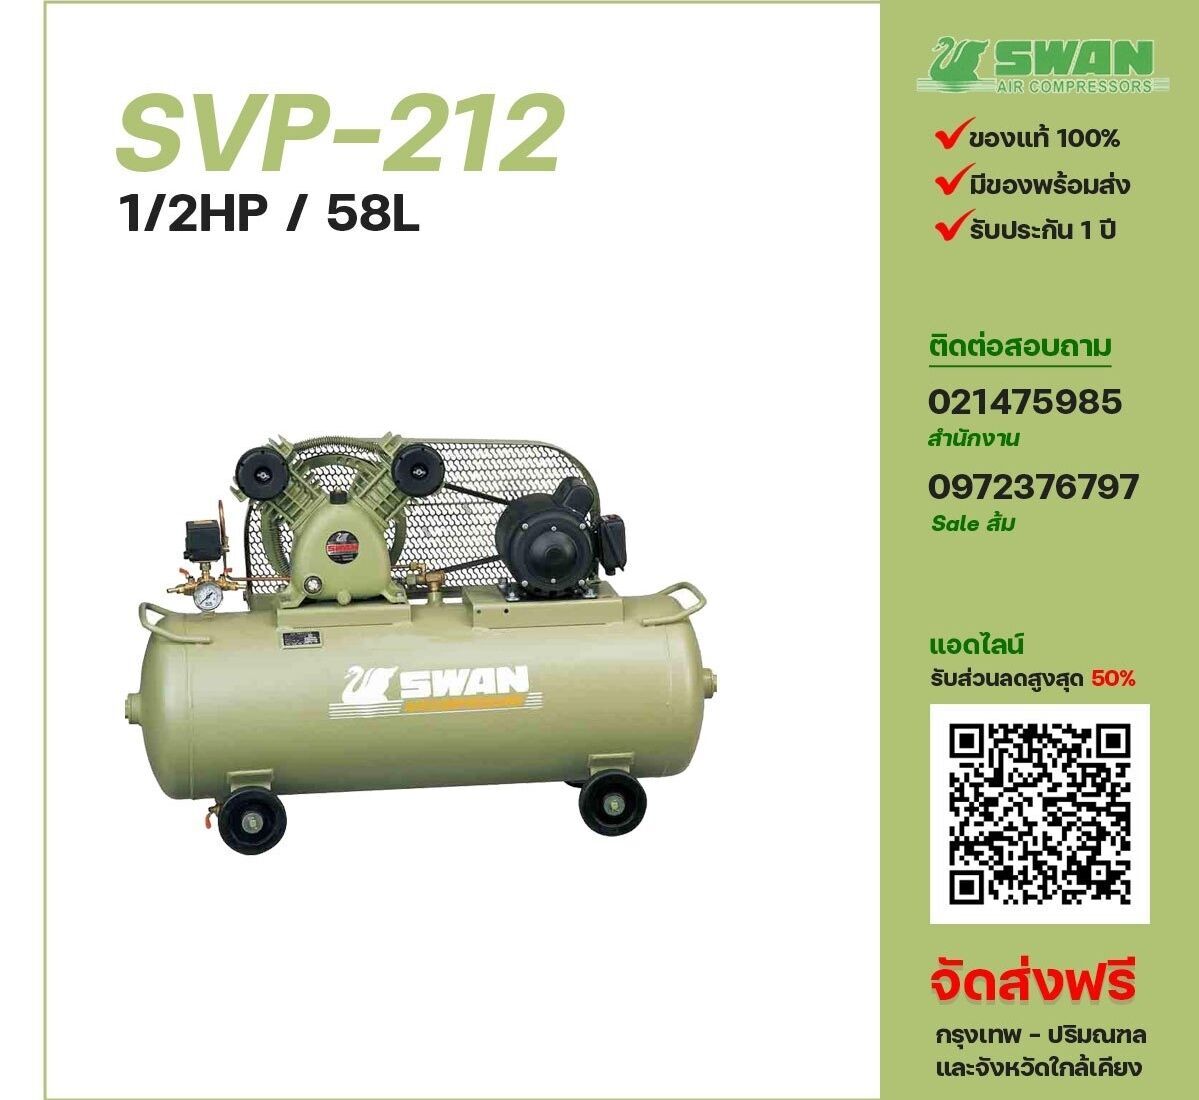 ปั๊มลมสวอน SWAN รุ่น SVP-212
ขนาด 1/2 แรงม้า / 58 ลิตร